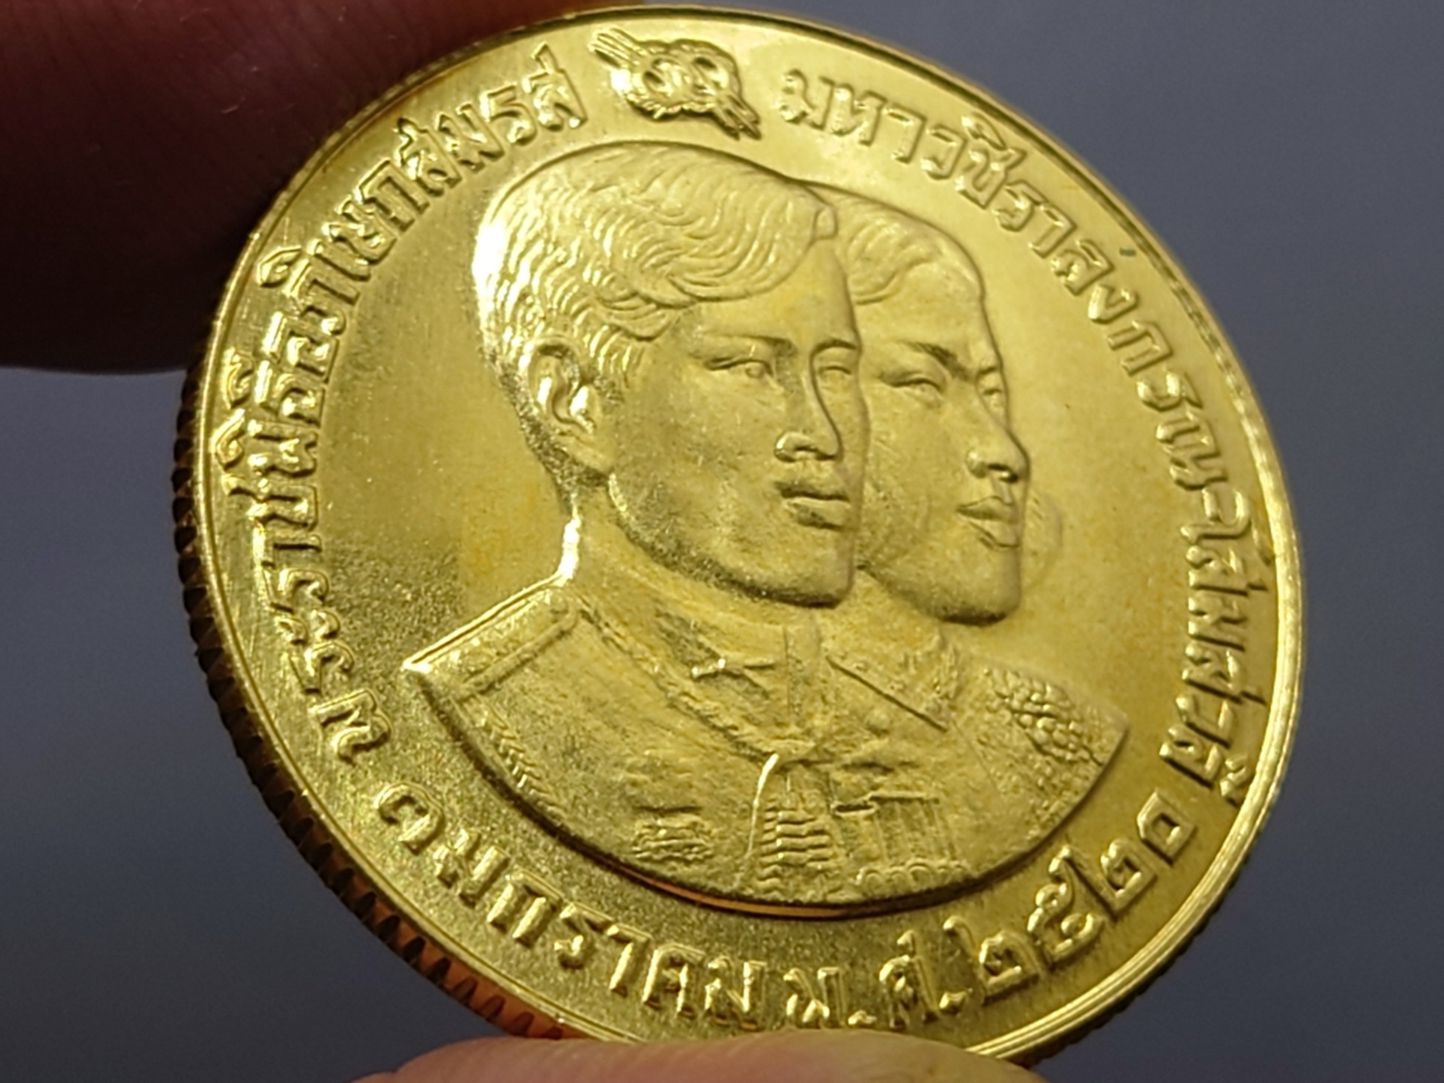 เหรียญทองคำ 2500 บาท ที่ระลึกพระราชพิธีอภิเษกสมรส สมเด็จพระบรมโอรสาธิราชฯ พ.ศ.2520 (หนัก 1 บาท) รูปที่ 5